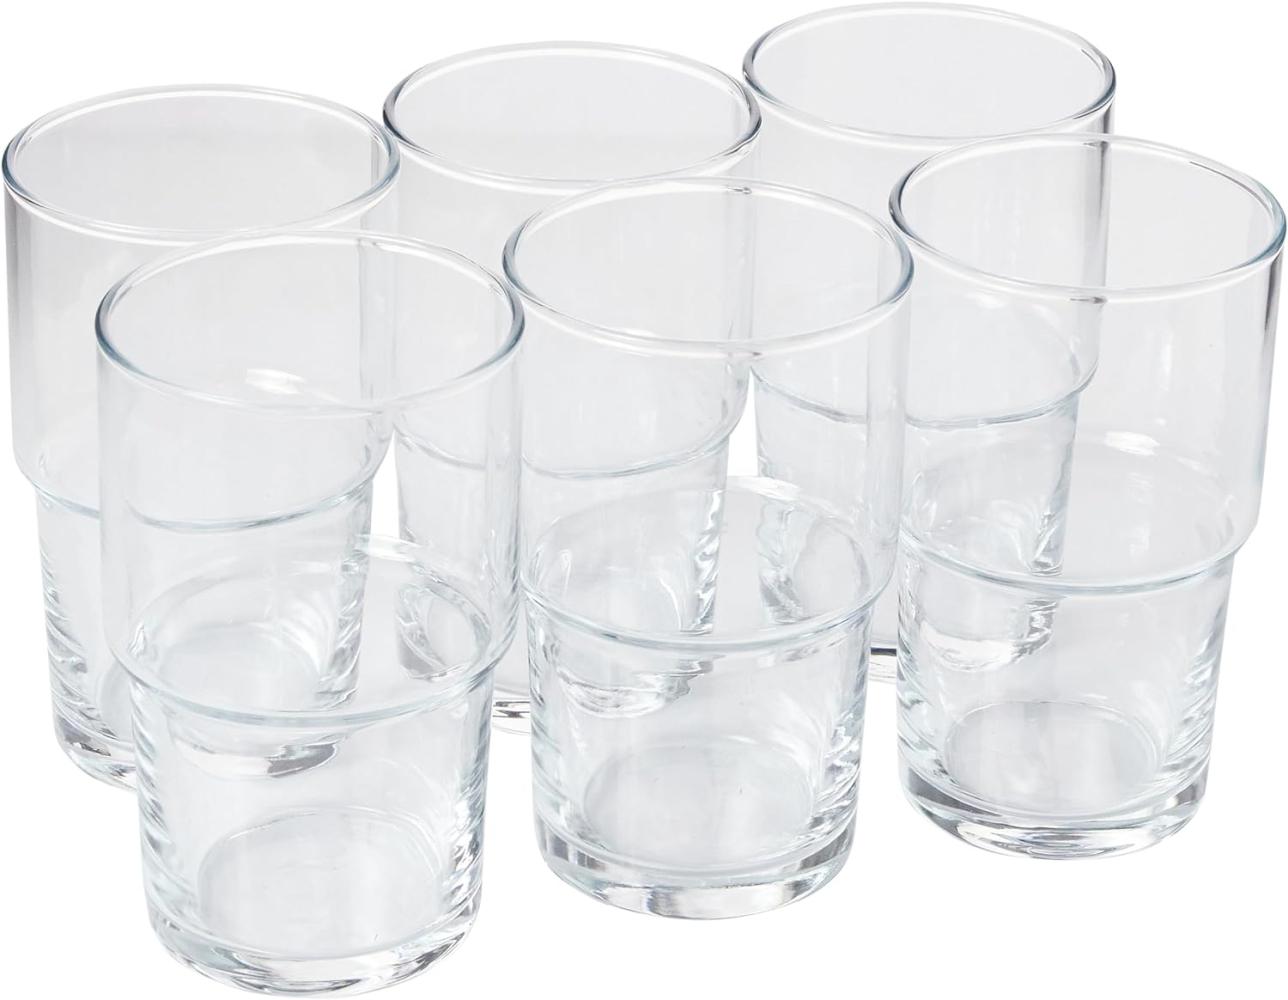 Pasabahce Hill Saftglas 6er 440cc Gläser-Set Trinkglas stapelbar Bild 1